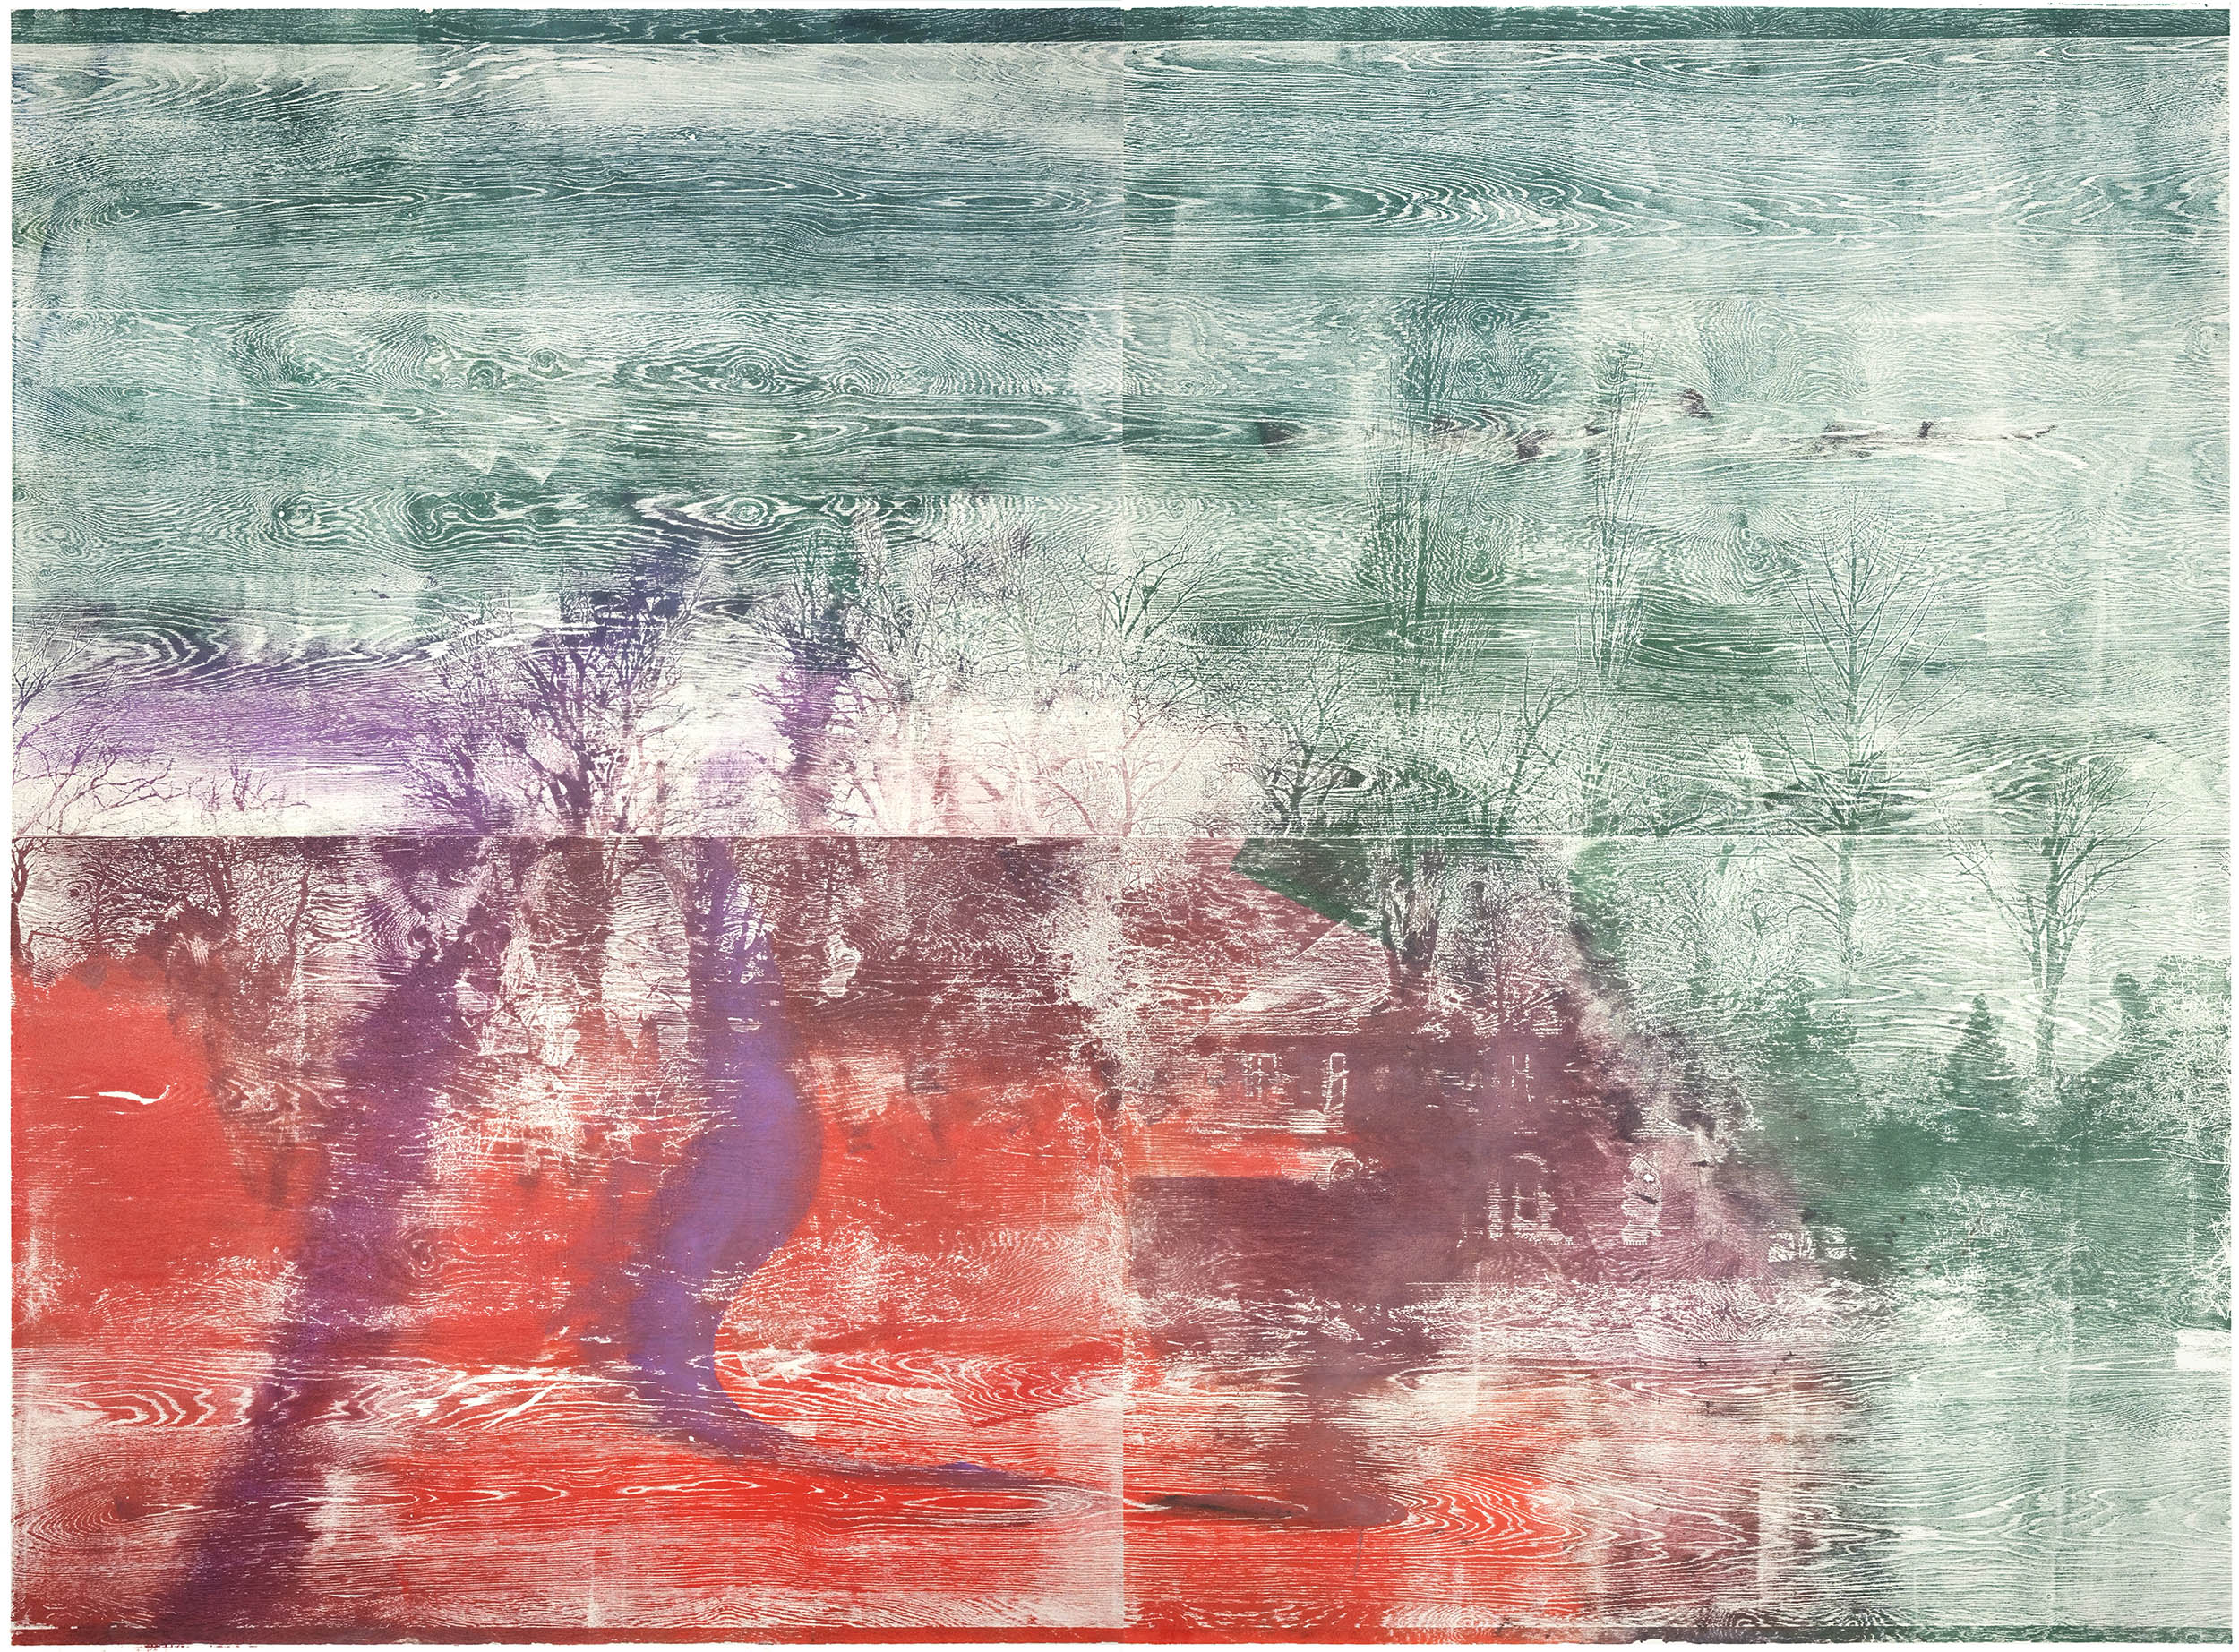 Die Ufer der Träume, 2022, wood engraving (walnut), 198,2 x 262,2 cm, Genaro Strobel, courtesy PRISKA PASQUER GALLERY